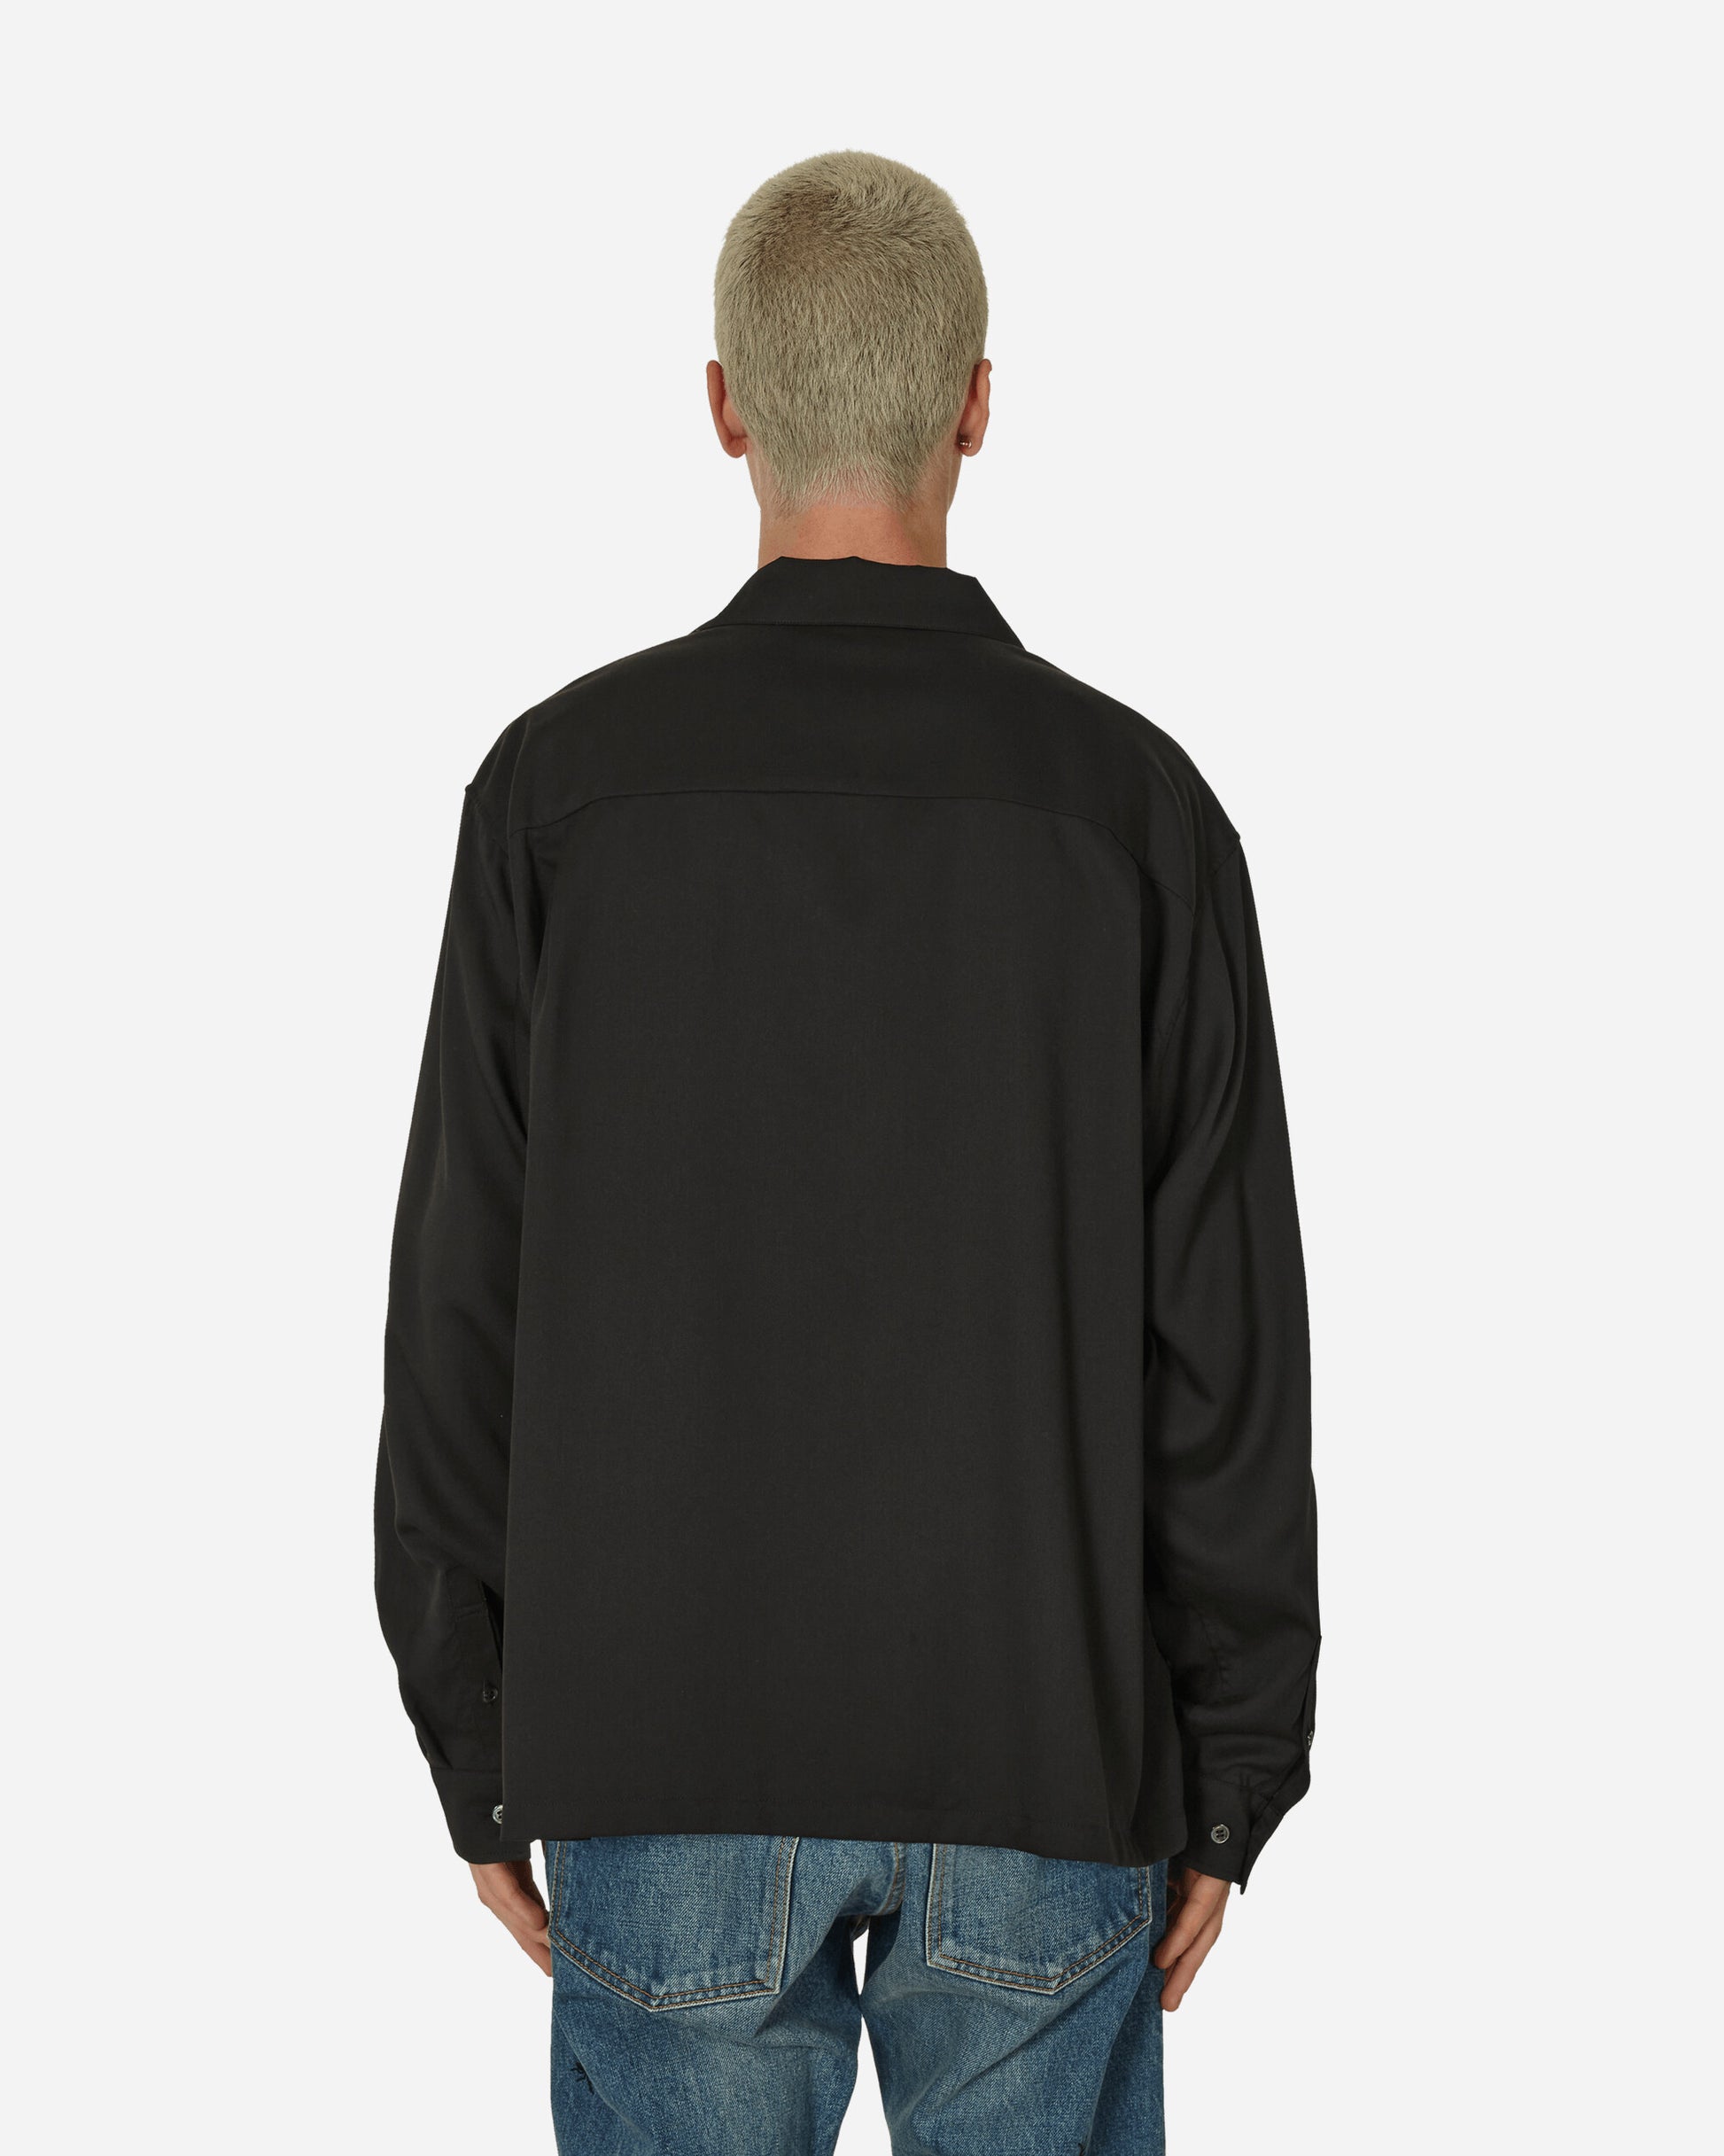 Undercover Shirt Blouse Black Shirts Longsleeve Shirt UP1D4401-2 1